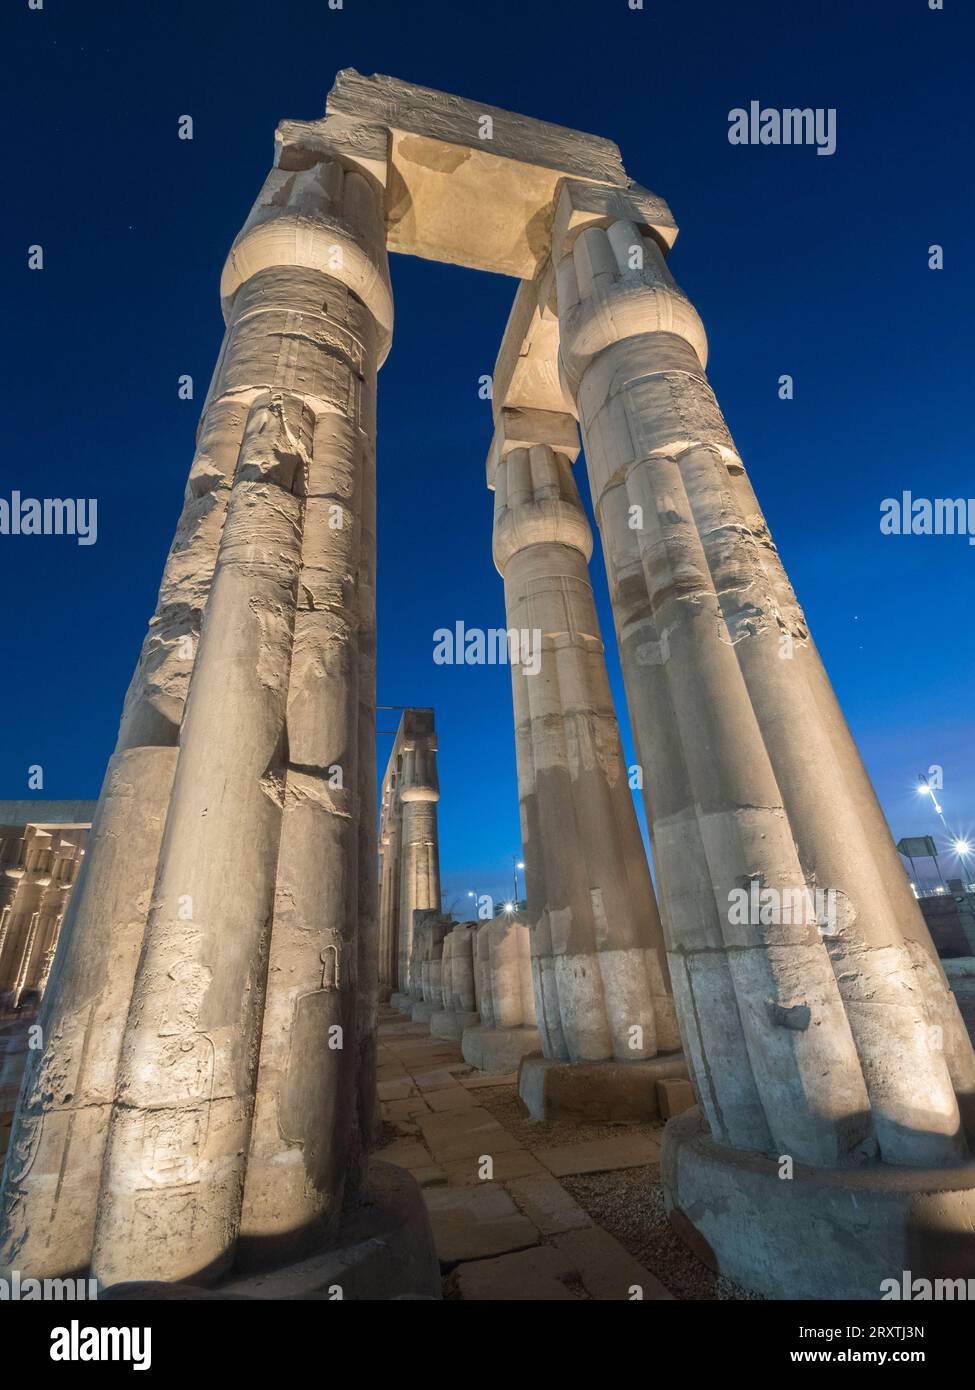 Il Tempio di Luxor di notte, un grande complesso di templi egizi costruito intorno al 1400 a.C., patrimonio dell'umanità dell'UNESCO, Luxor, Tebe Foto Stock